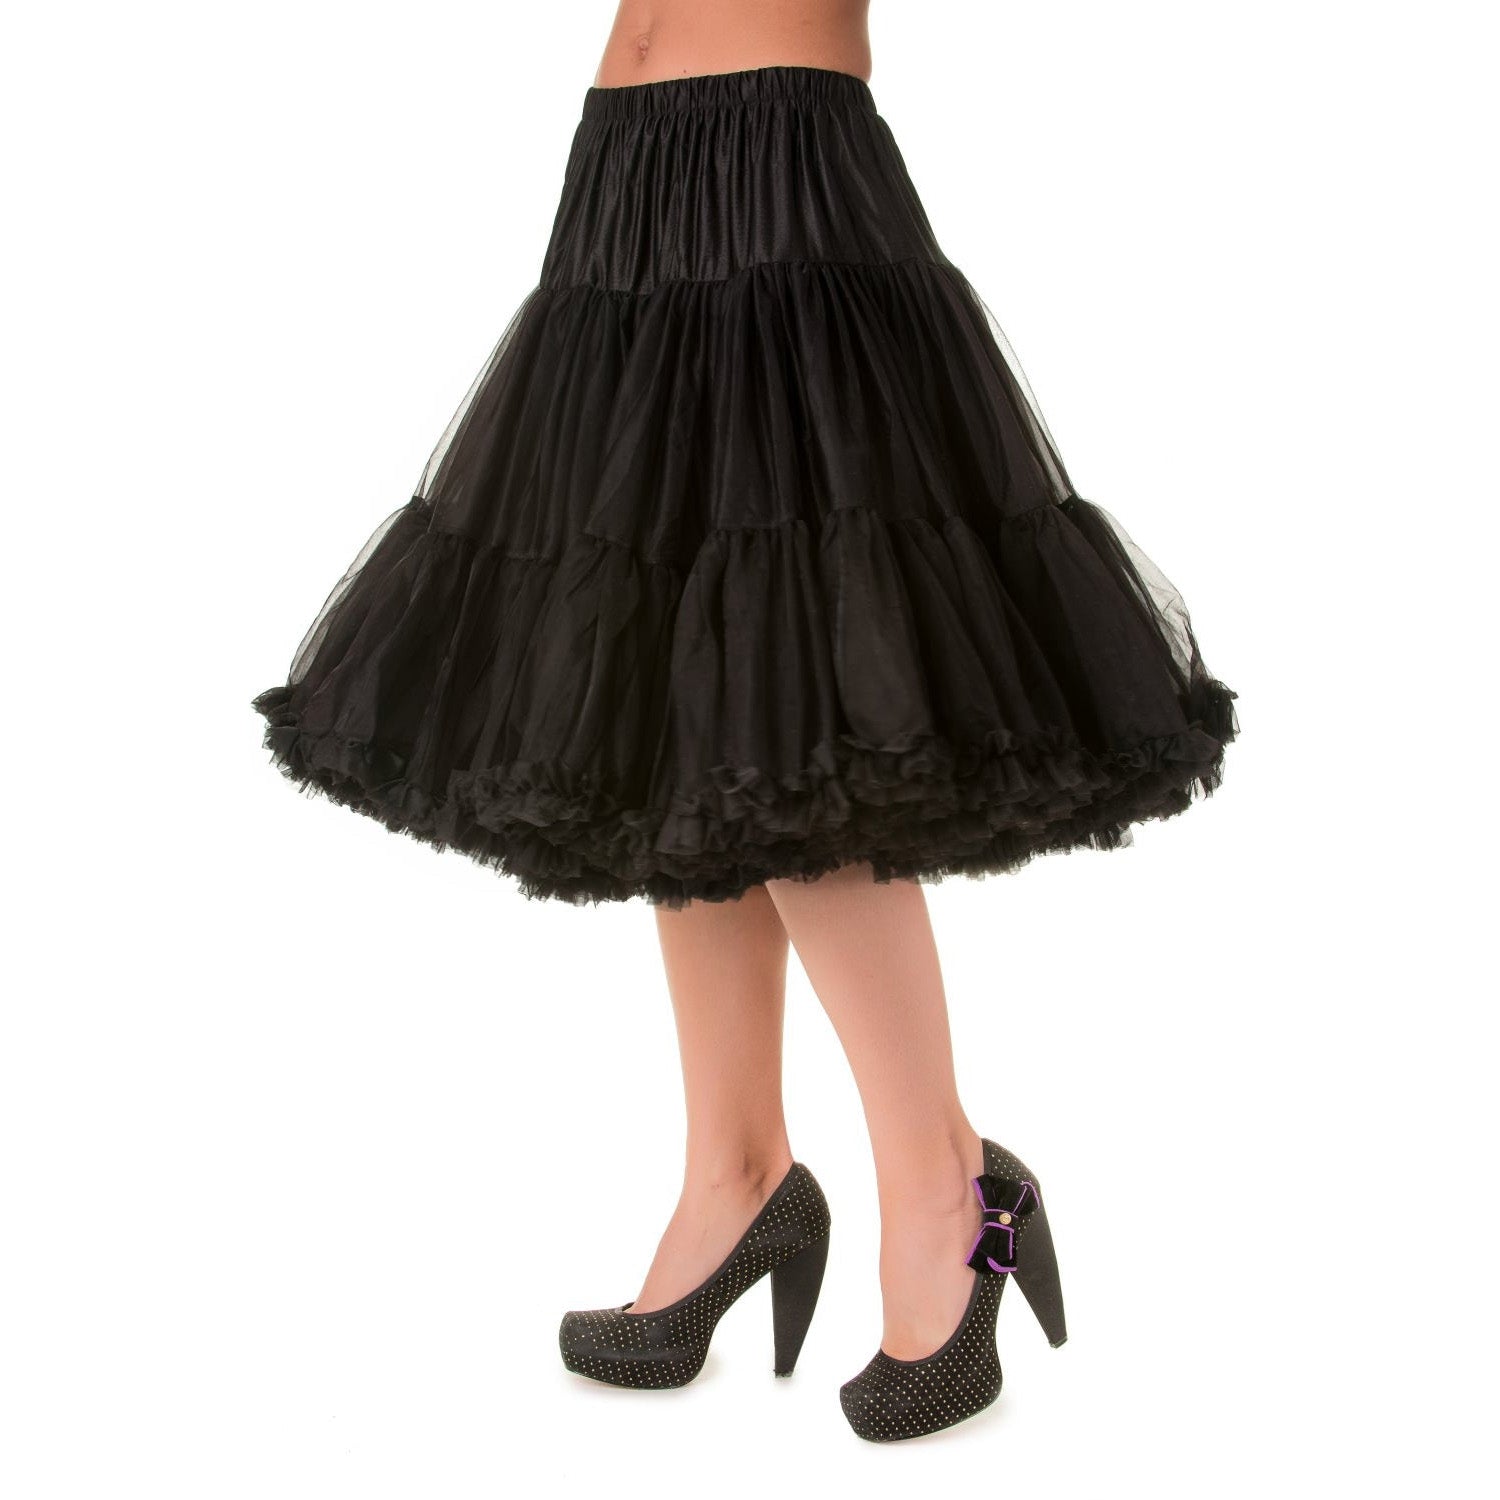 EXTRA LONG Full Black Net Vintage Rockabilly 50s Petticoat Skirt